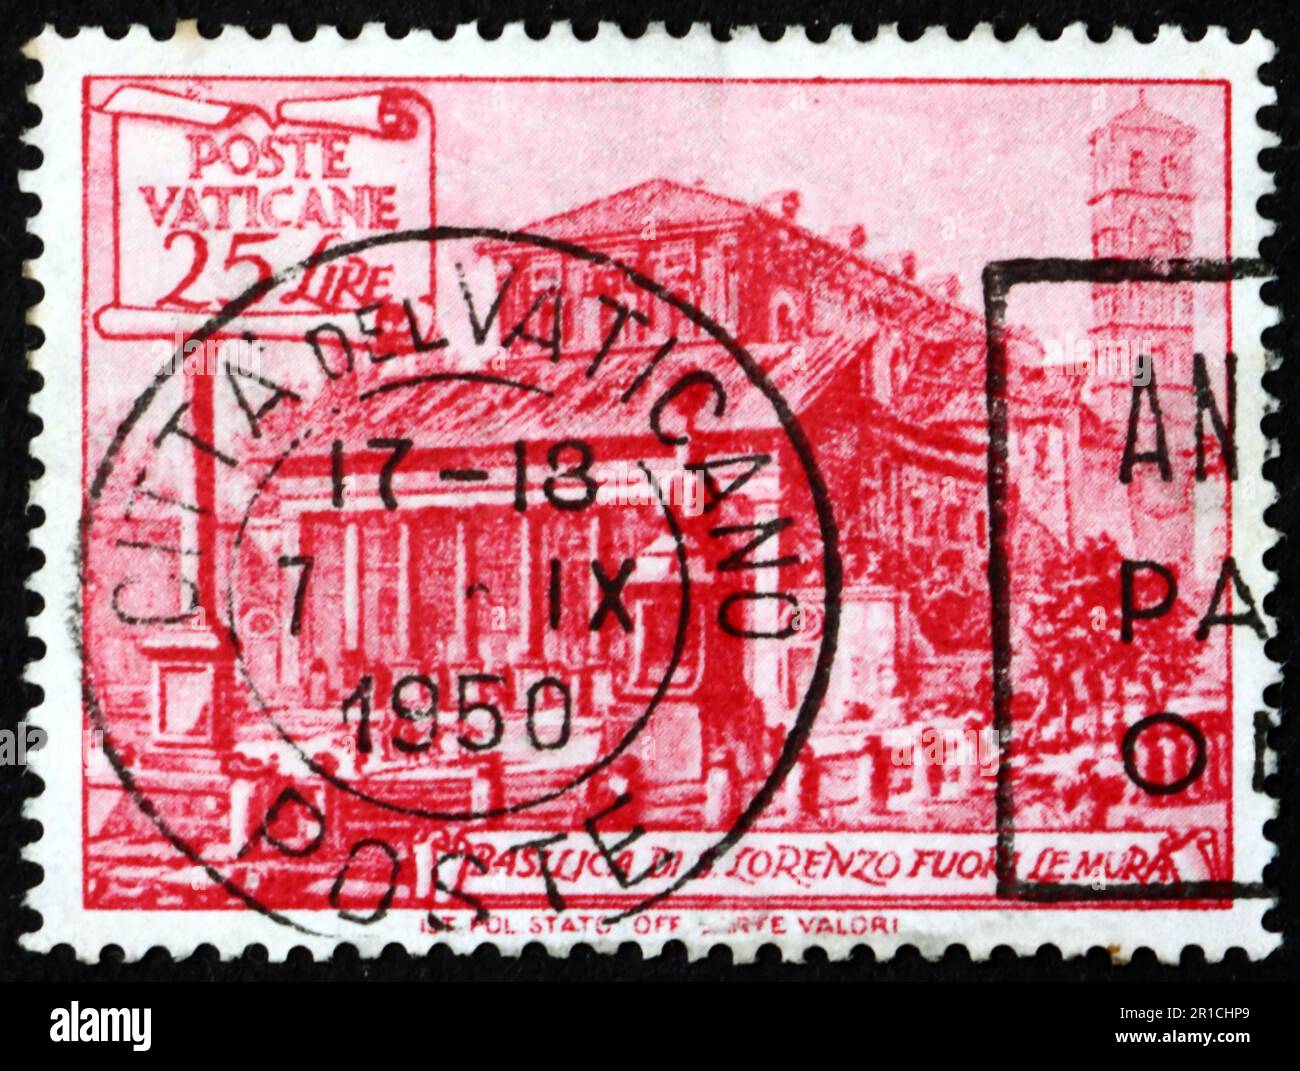 VATIKAN - CA. 1949: Eine im Vatikan gedruckte Briefmarke zeigt die Basilika St. Lawrence, etwa 1949 Stockfoto